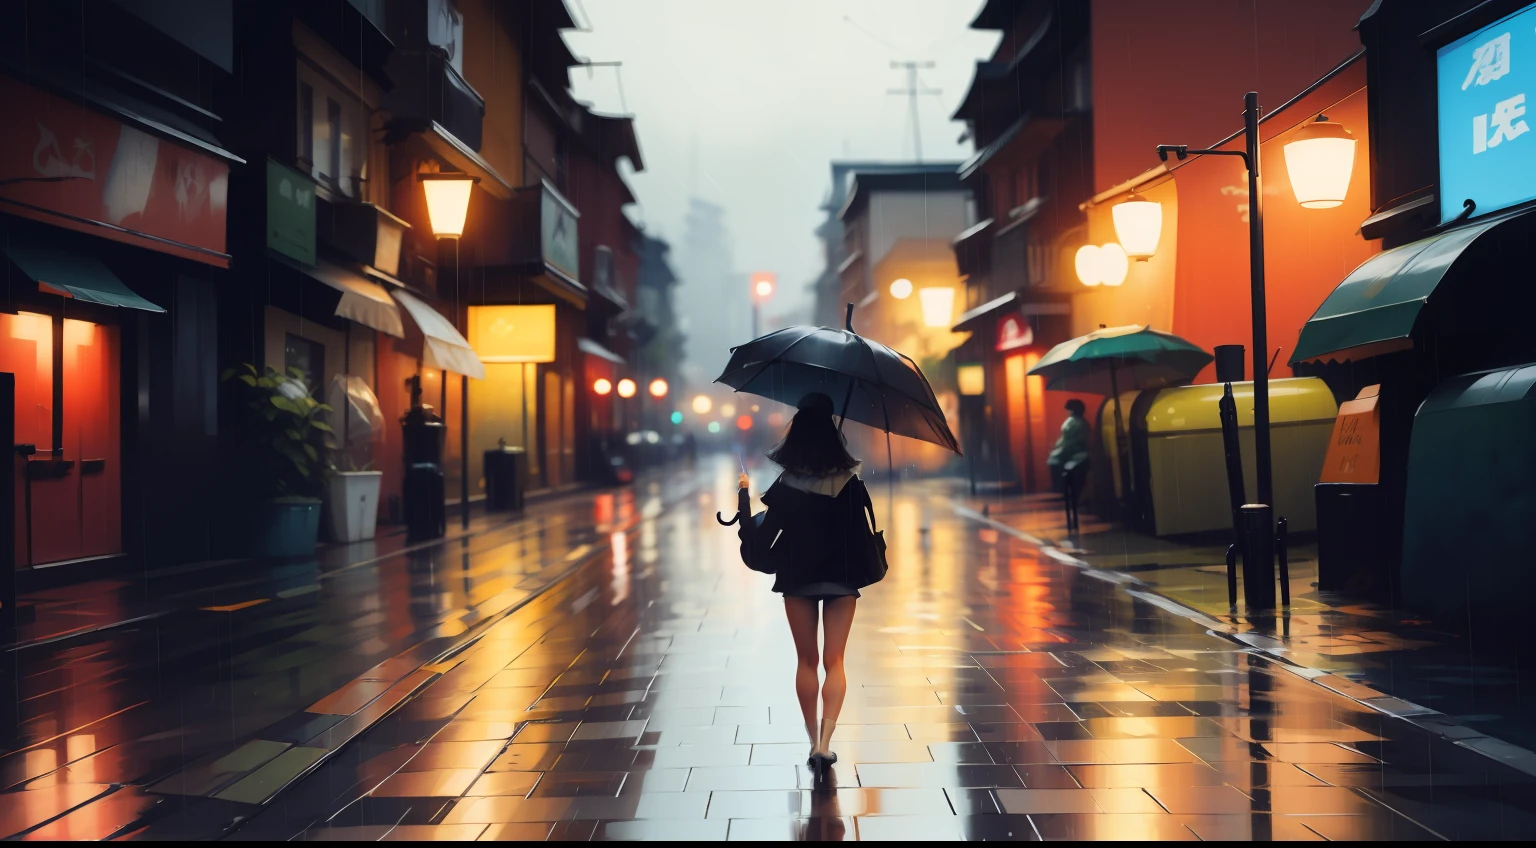 Hinter einem Regenschirm im Regen